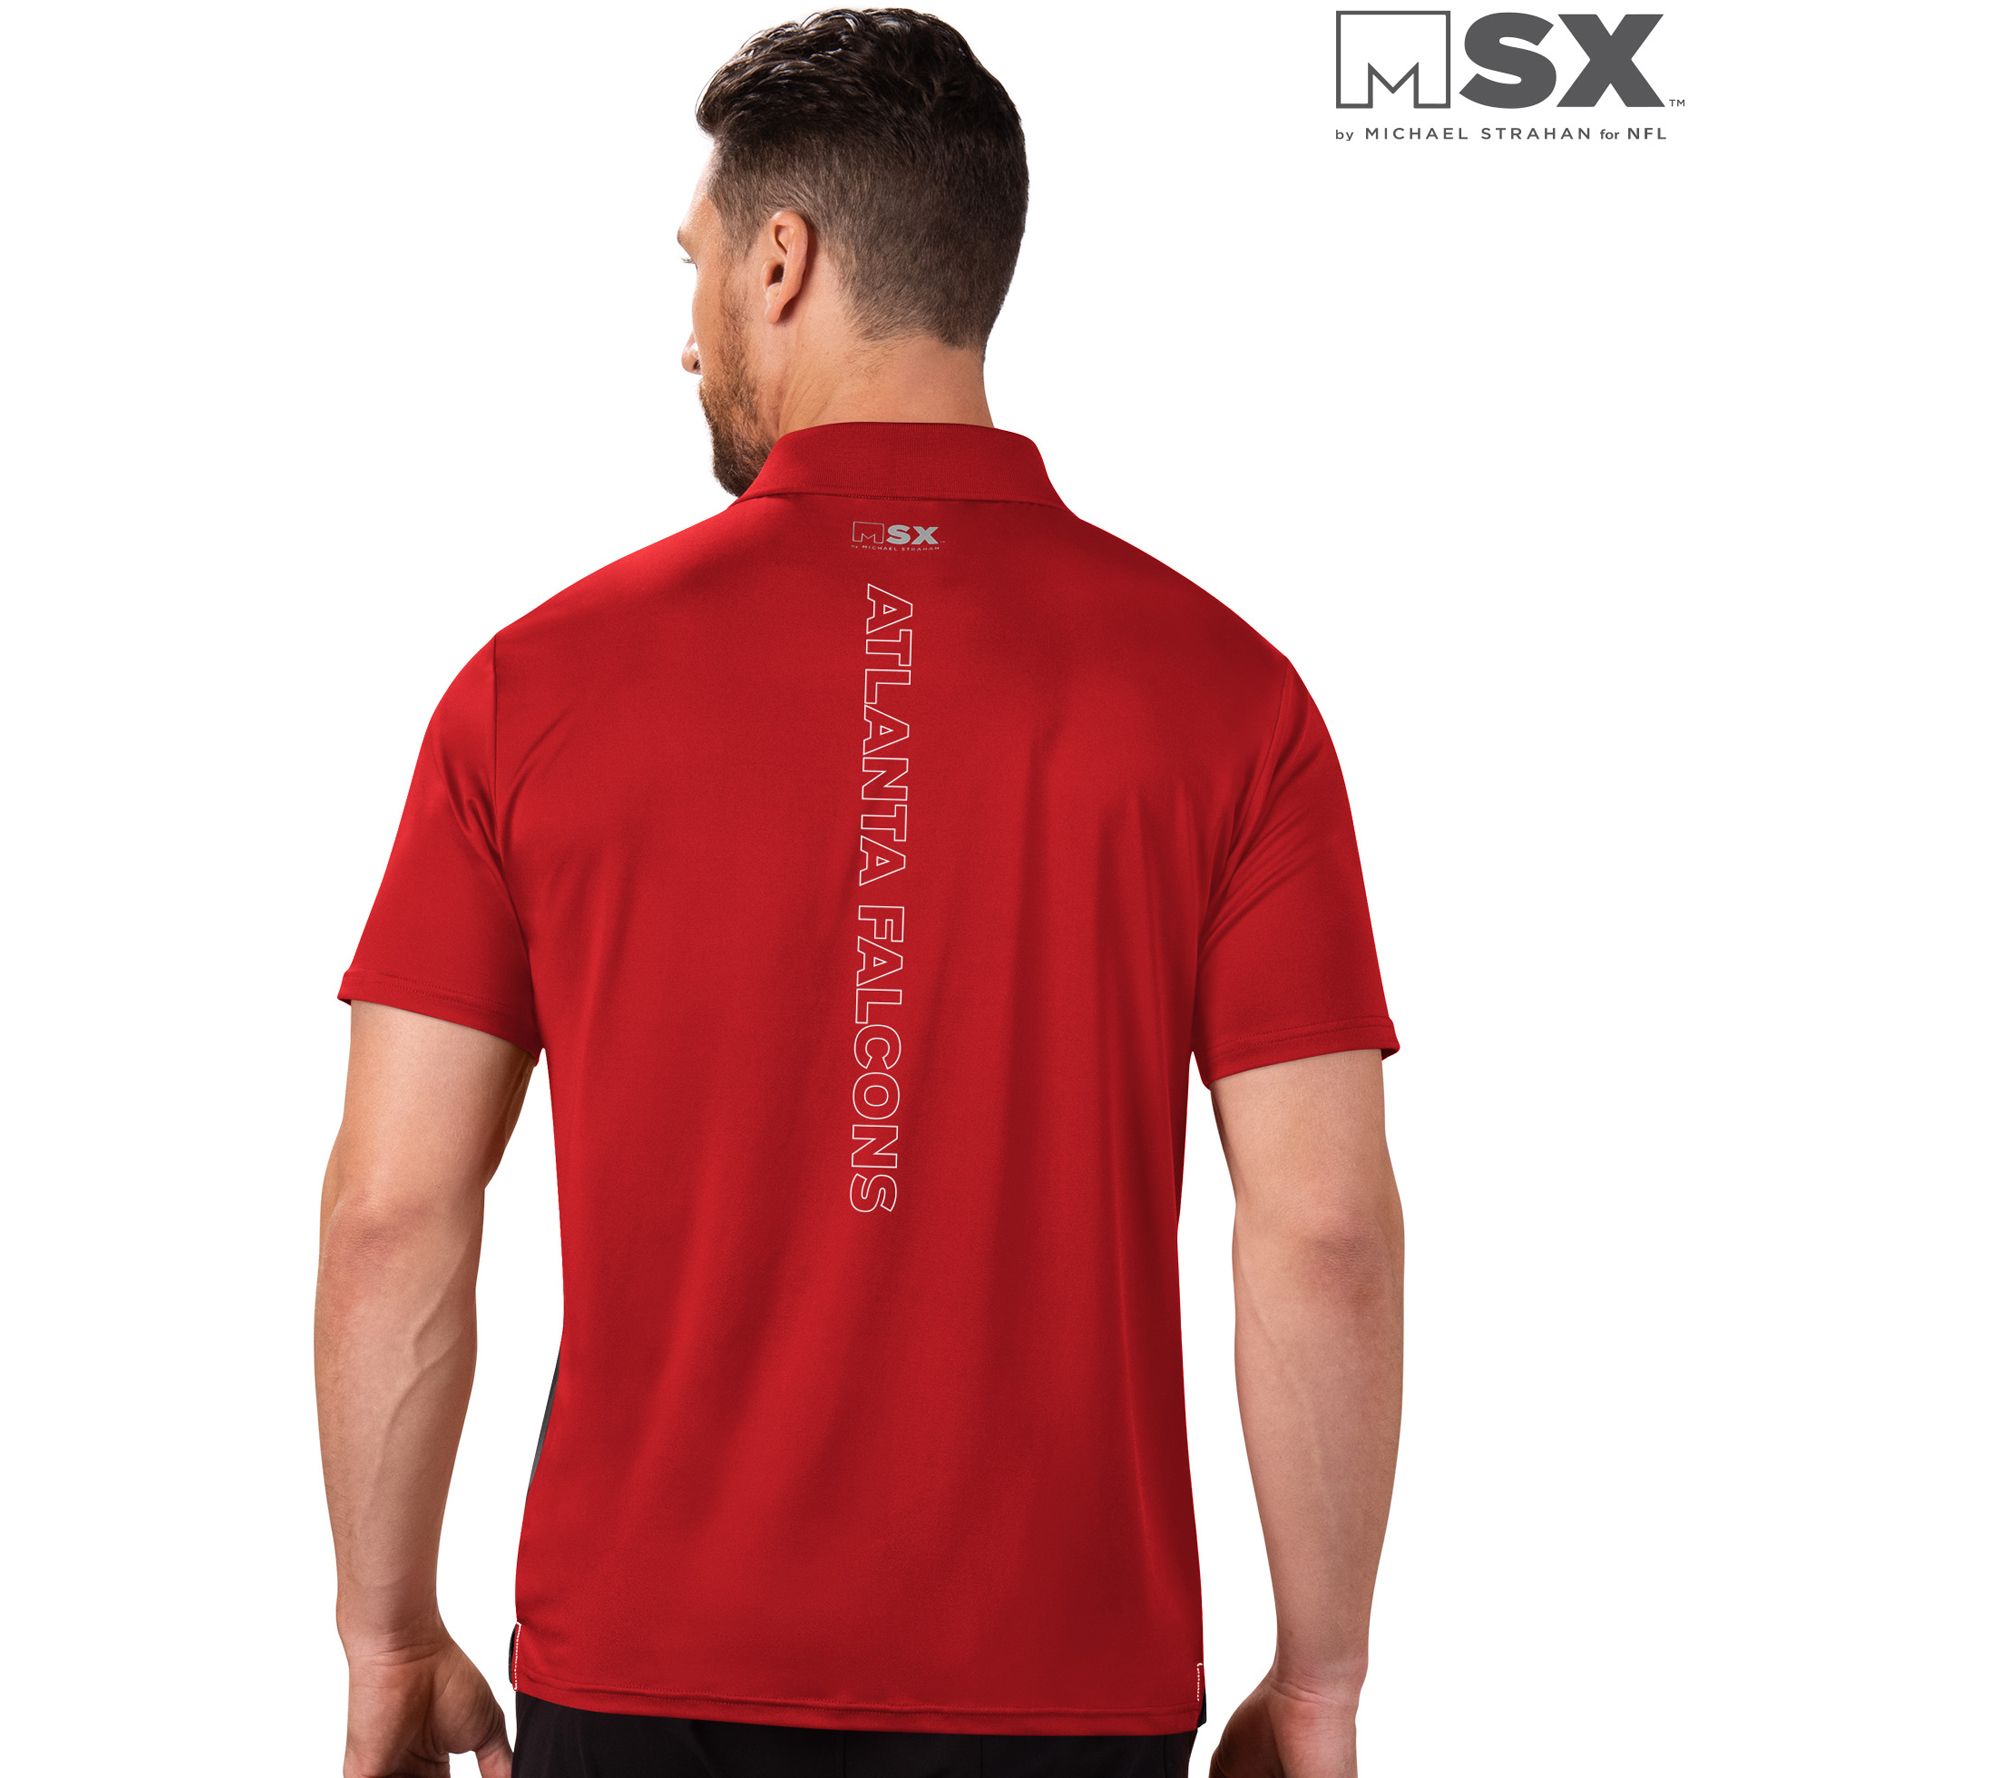 Atlanta Falcons Super Star Shirt - ABeautifulShirt